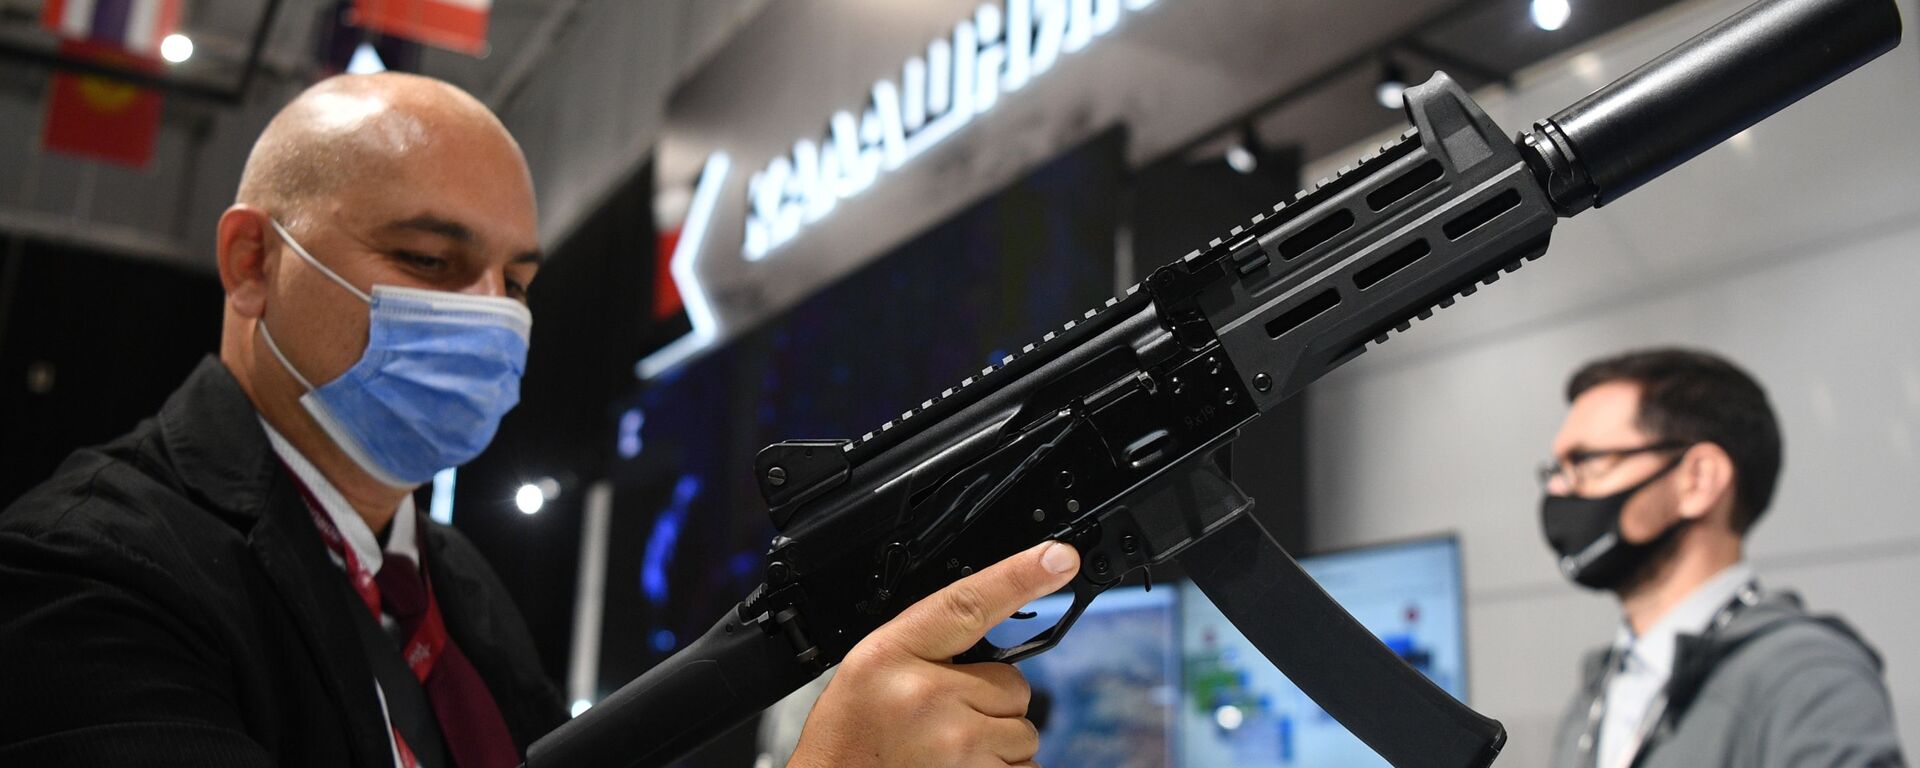 Пистолет-пулемет ППК-20 концерна Калашников, представленный в выставочной экспозиции на Международном форуме АРМИЯ-2021 в Конгрессно-выставочном центре Патриот - Sputnik Армения, 1920, 31.05.2023